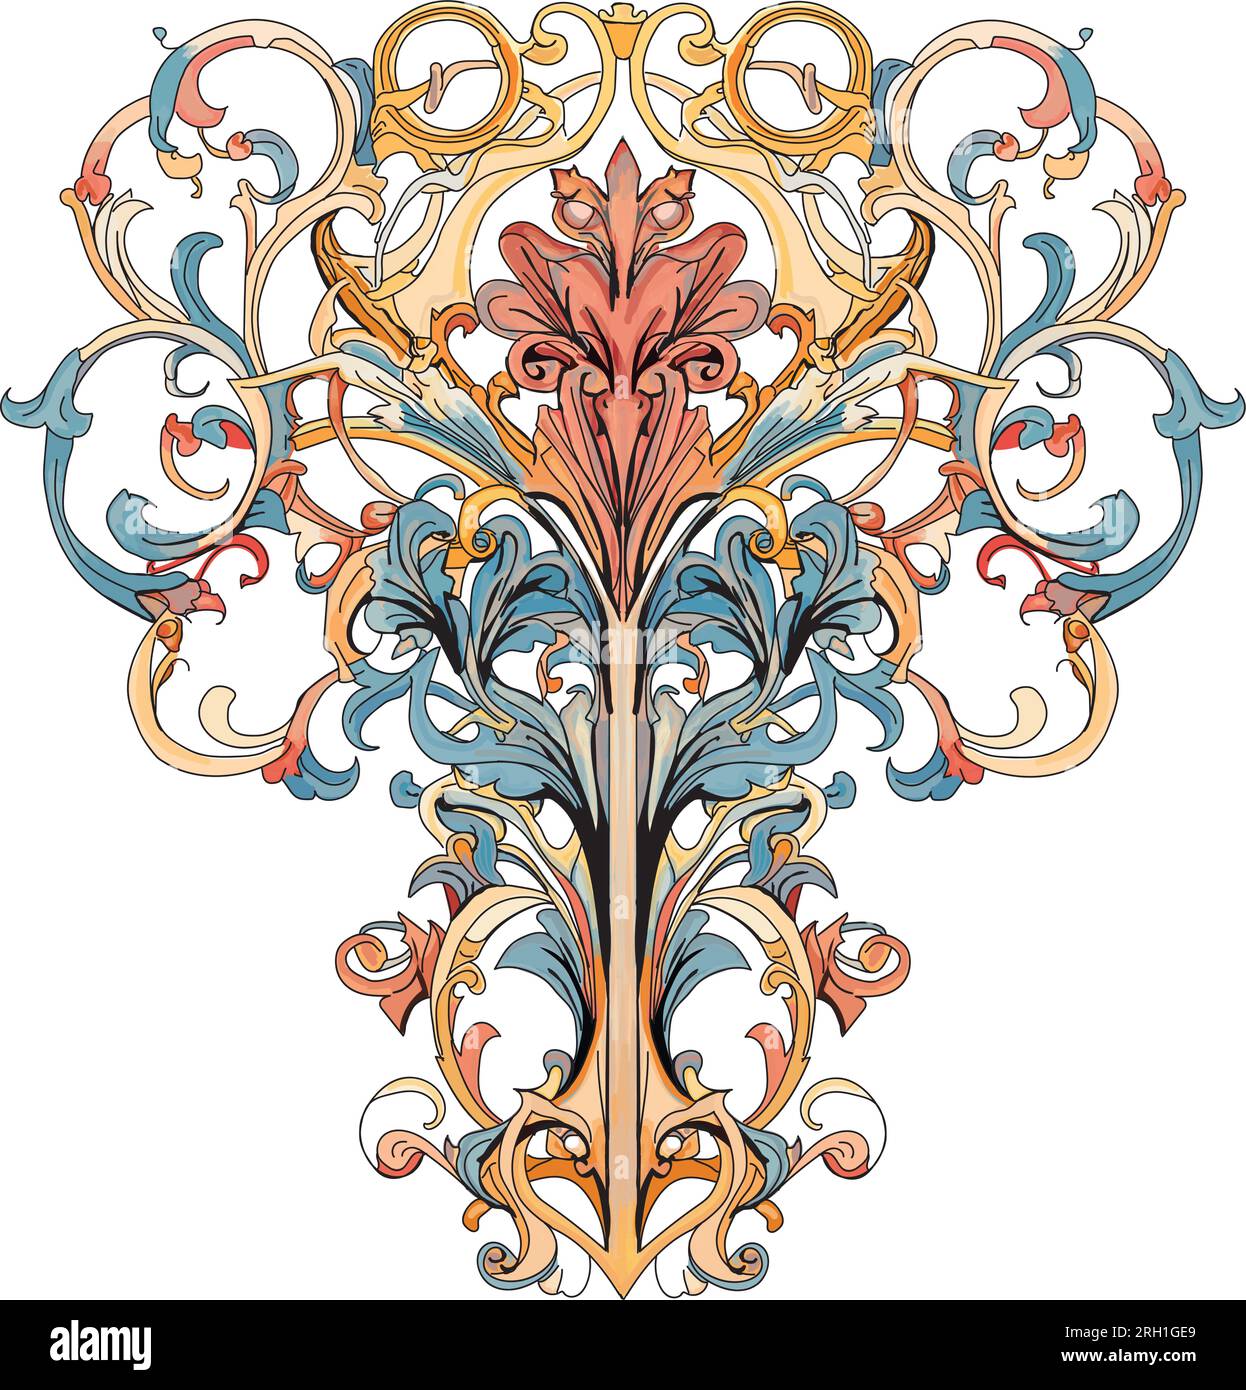 Élément de design floral de style baroque, rose, bleu et jaune multicolore, fleurs d'iris Illustration de Vecteur